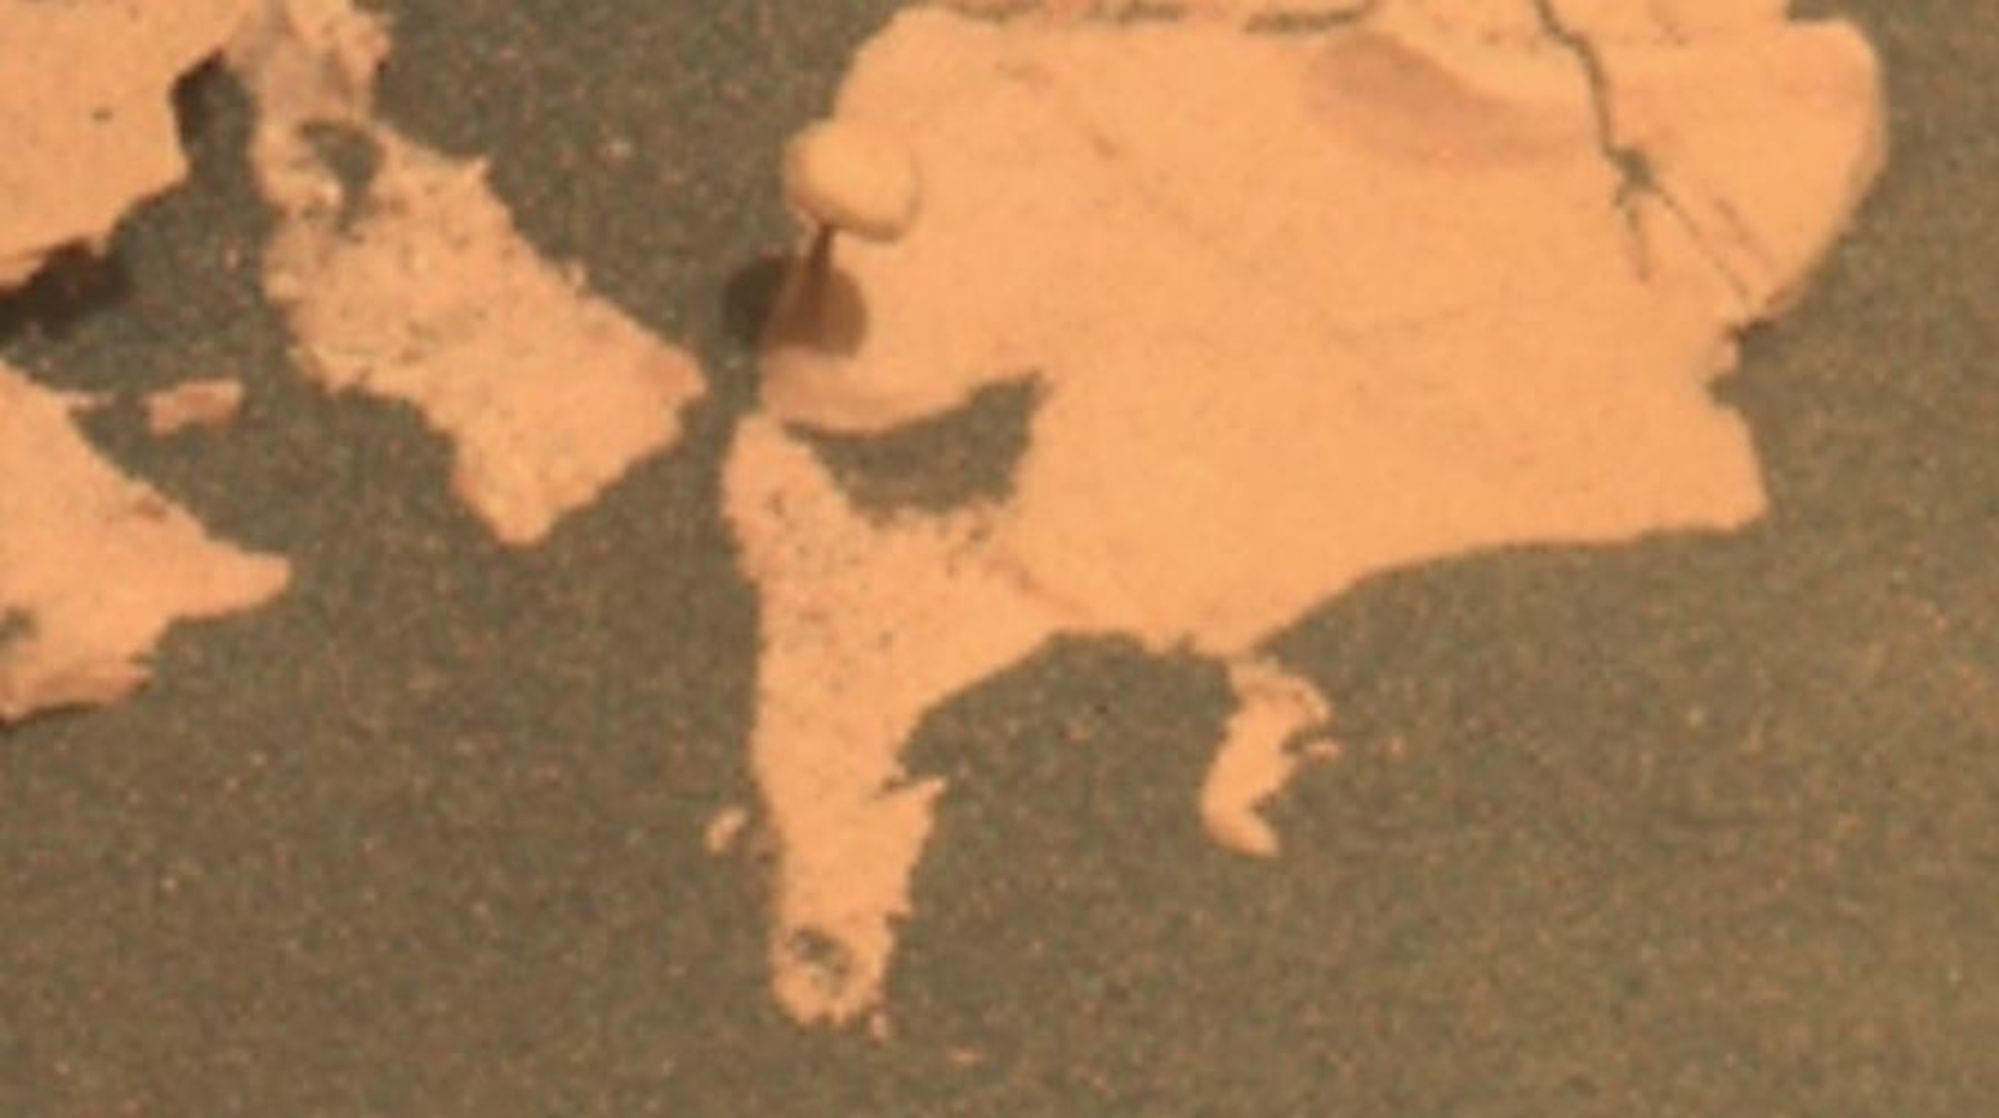 La NASA encuentra una seta en el suelo de Marte EuropaPress 